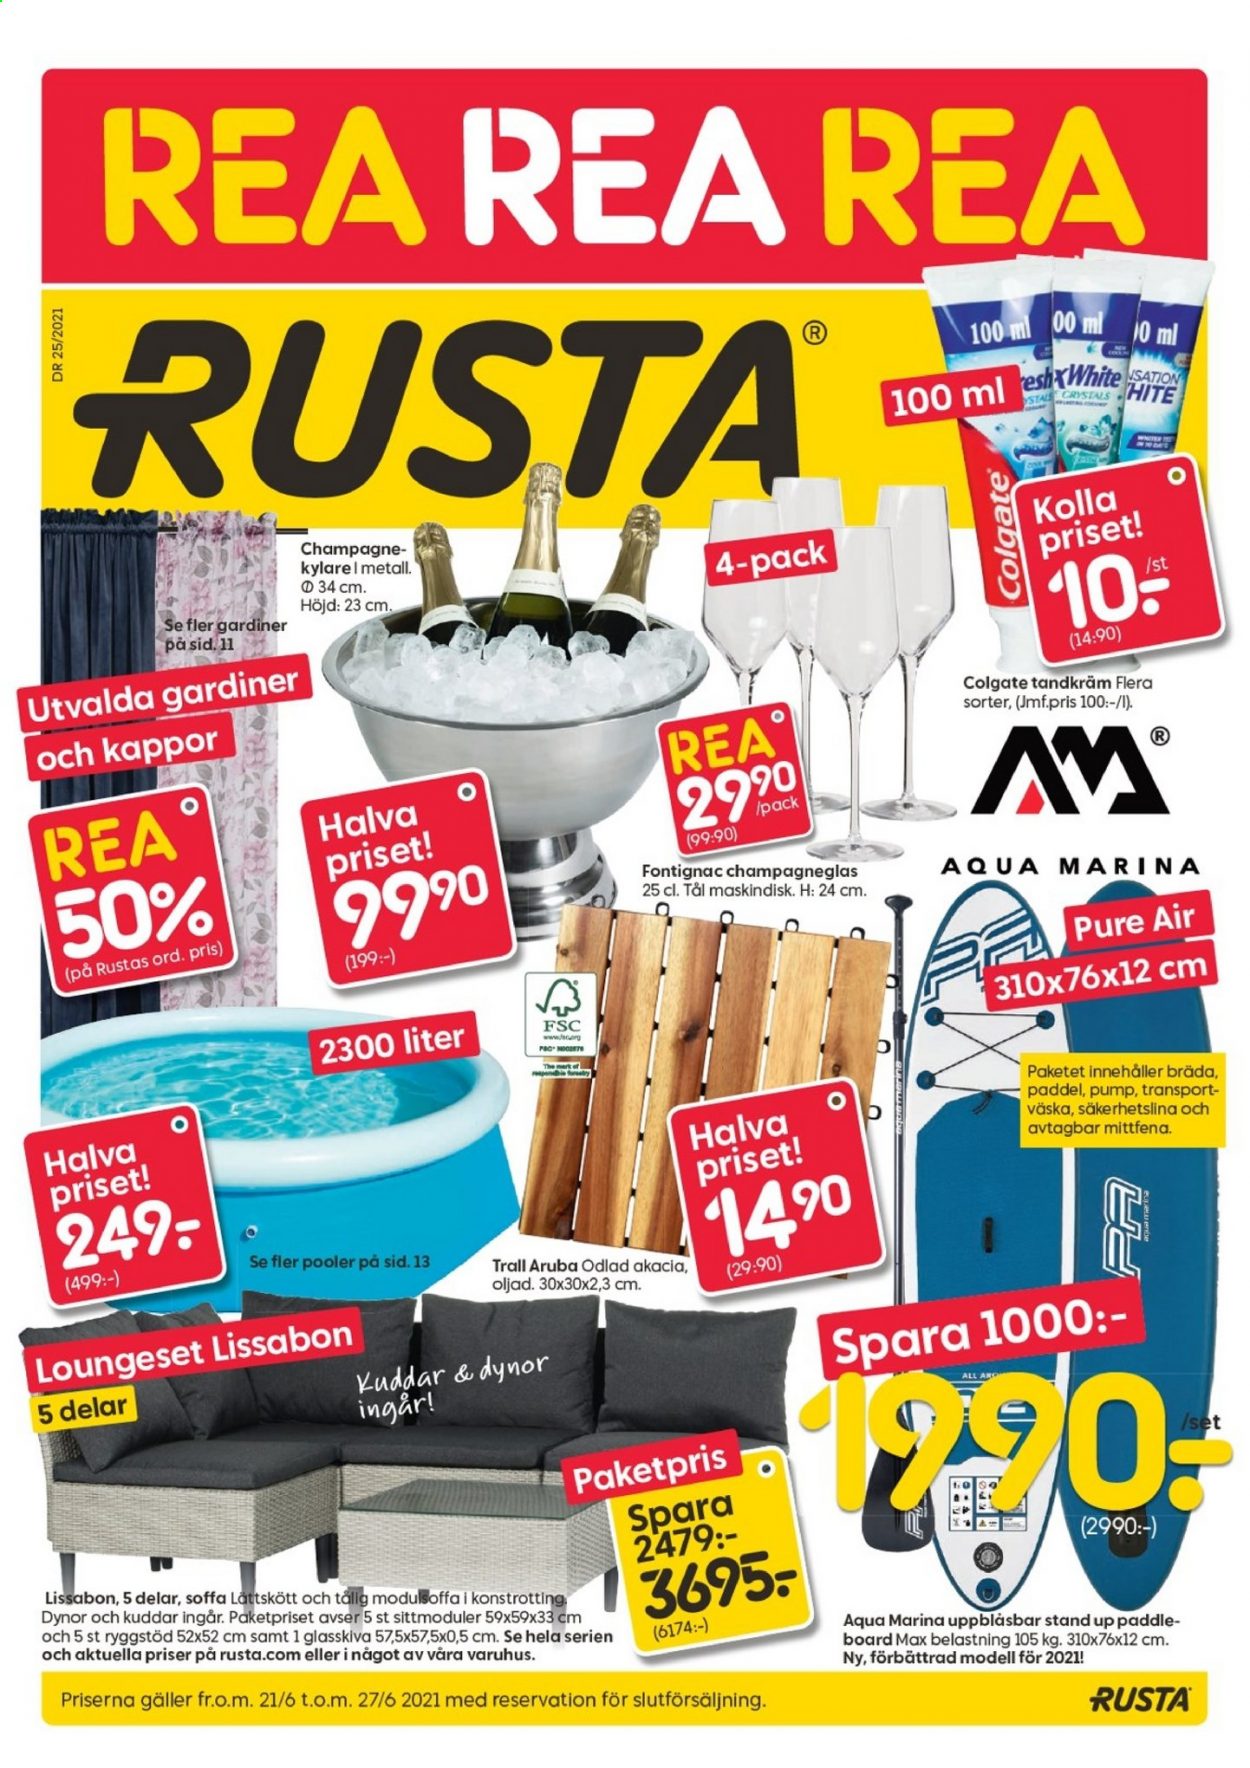 Rusta reklamblad - 21/6 2021 - 27/6 2021.